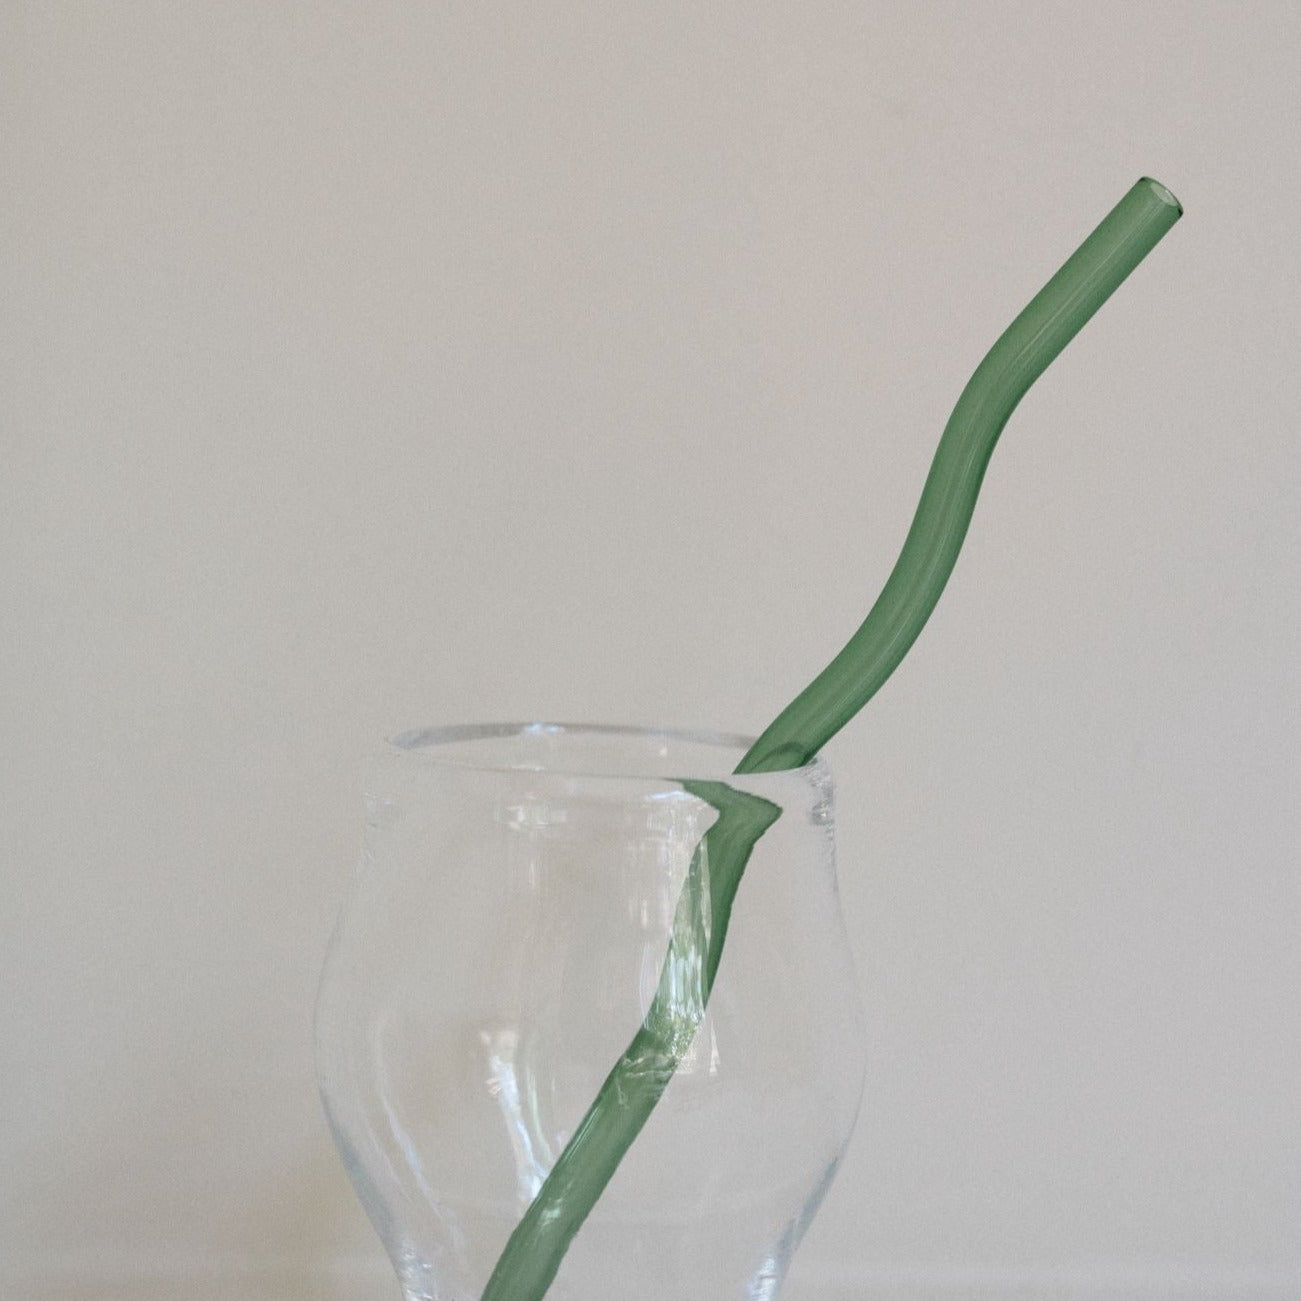 Wavy Glass Straw Set